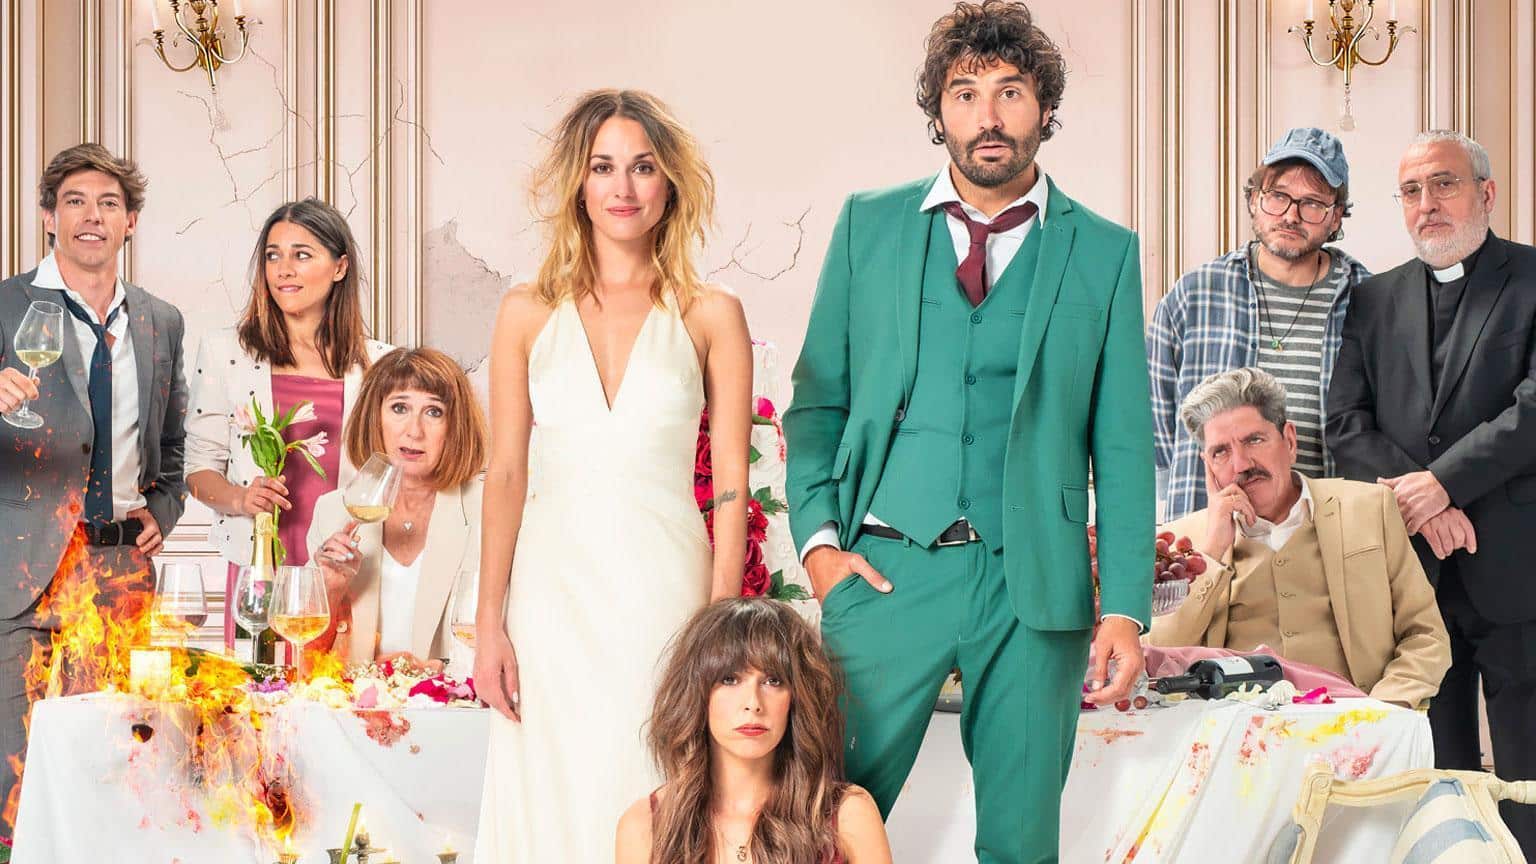 The Wedding (Un)planner - Heirate wer kann! Film 2021 Blu-ray DVD shop kaufen Artikelbild